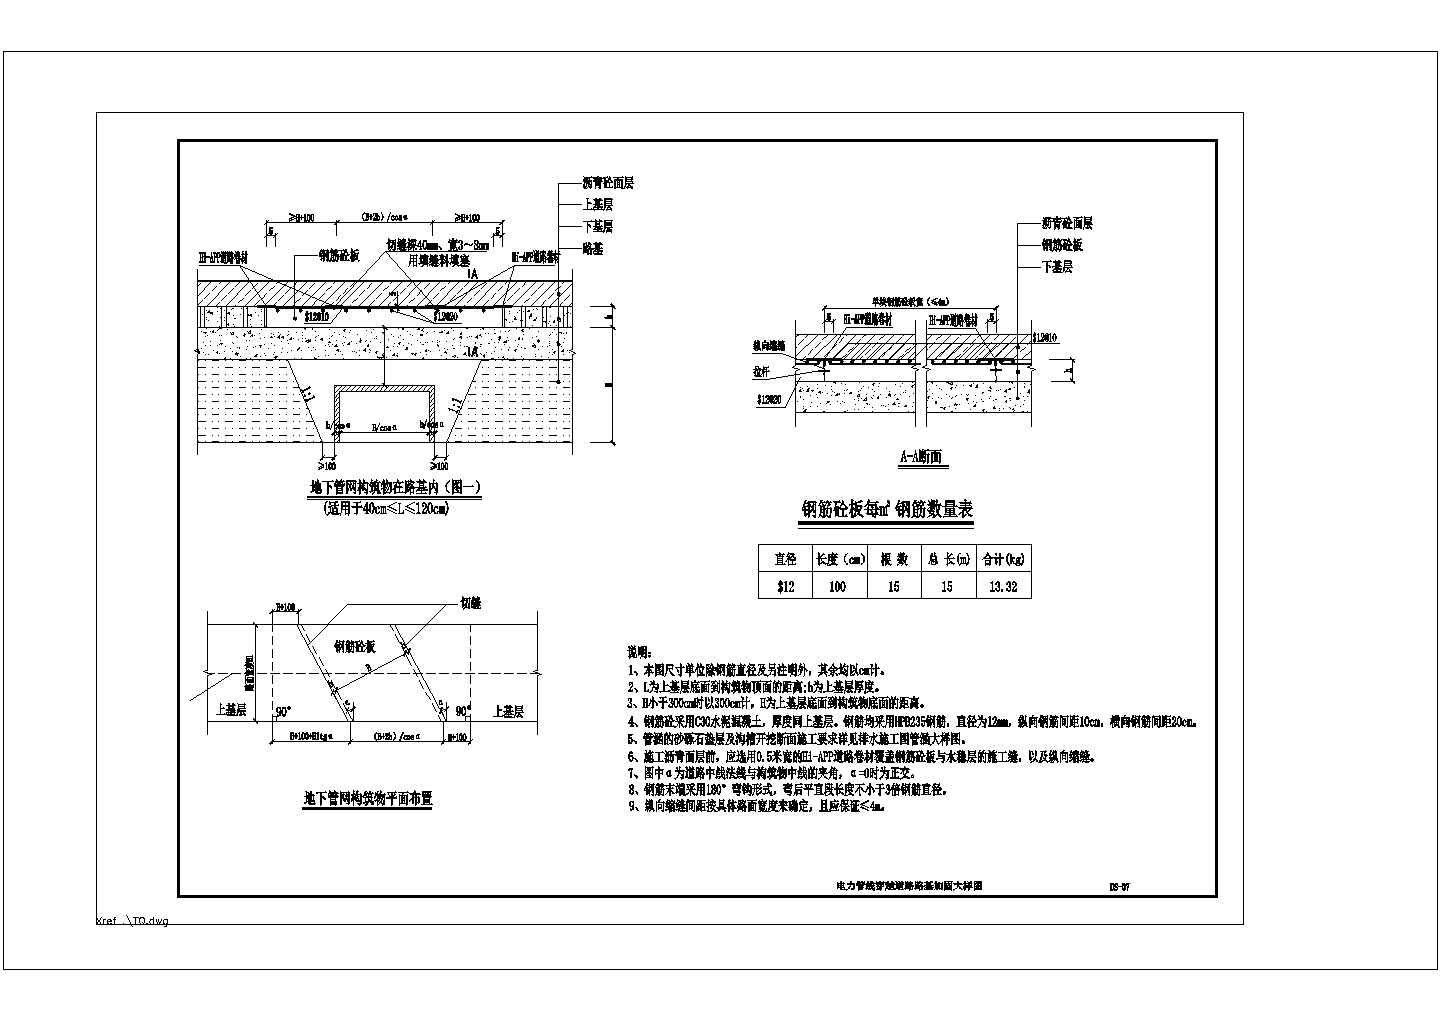 DS-06 地下管网构筑物穿越道路路基加固大样图cad详细图纸设计